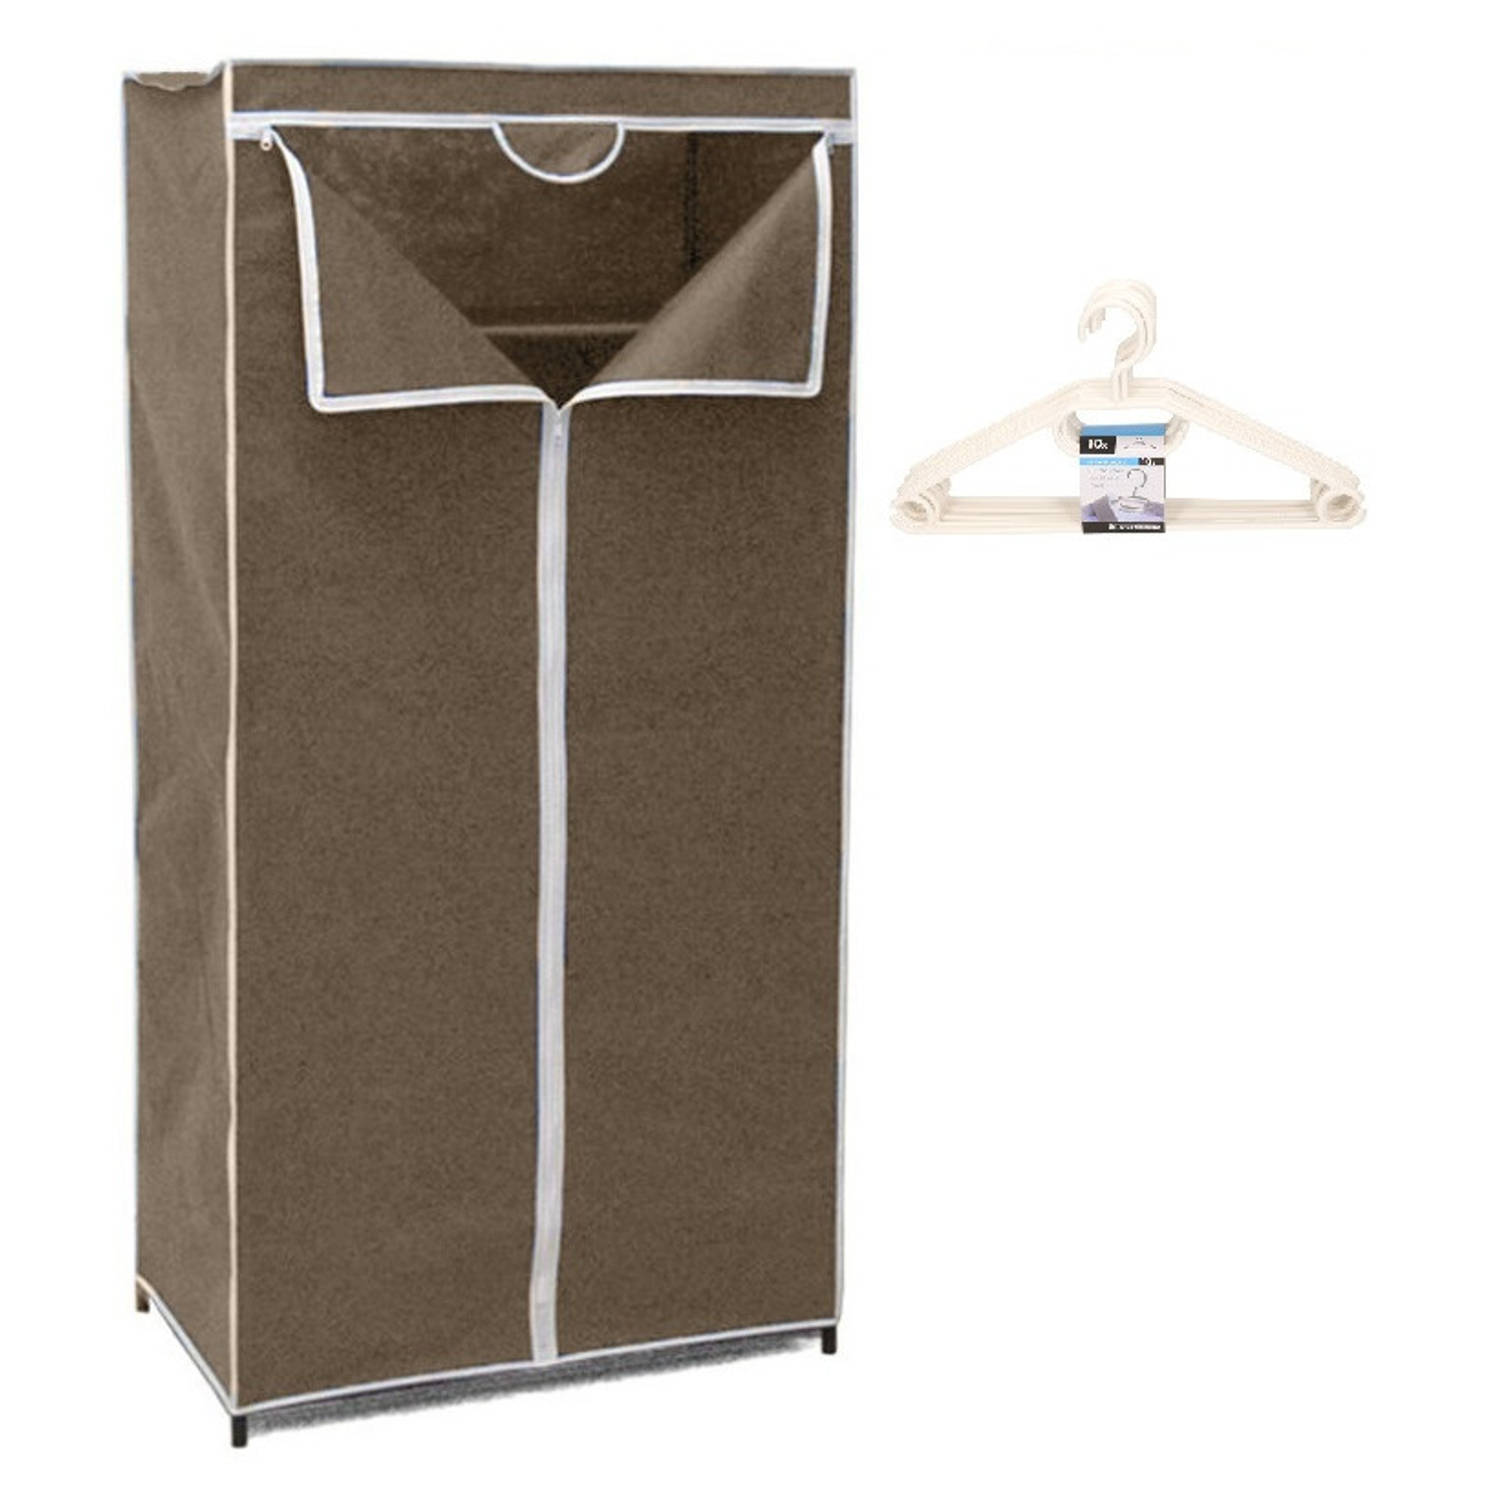 Mobiele opvouwbare kledingkast bruin 75 x 46 x 160 cm incl. 10 witte kledinghangers Campingkledingka